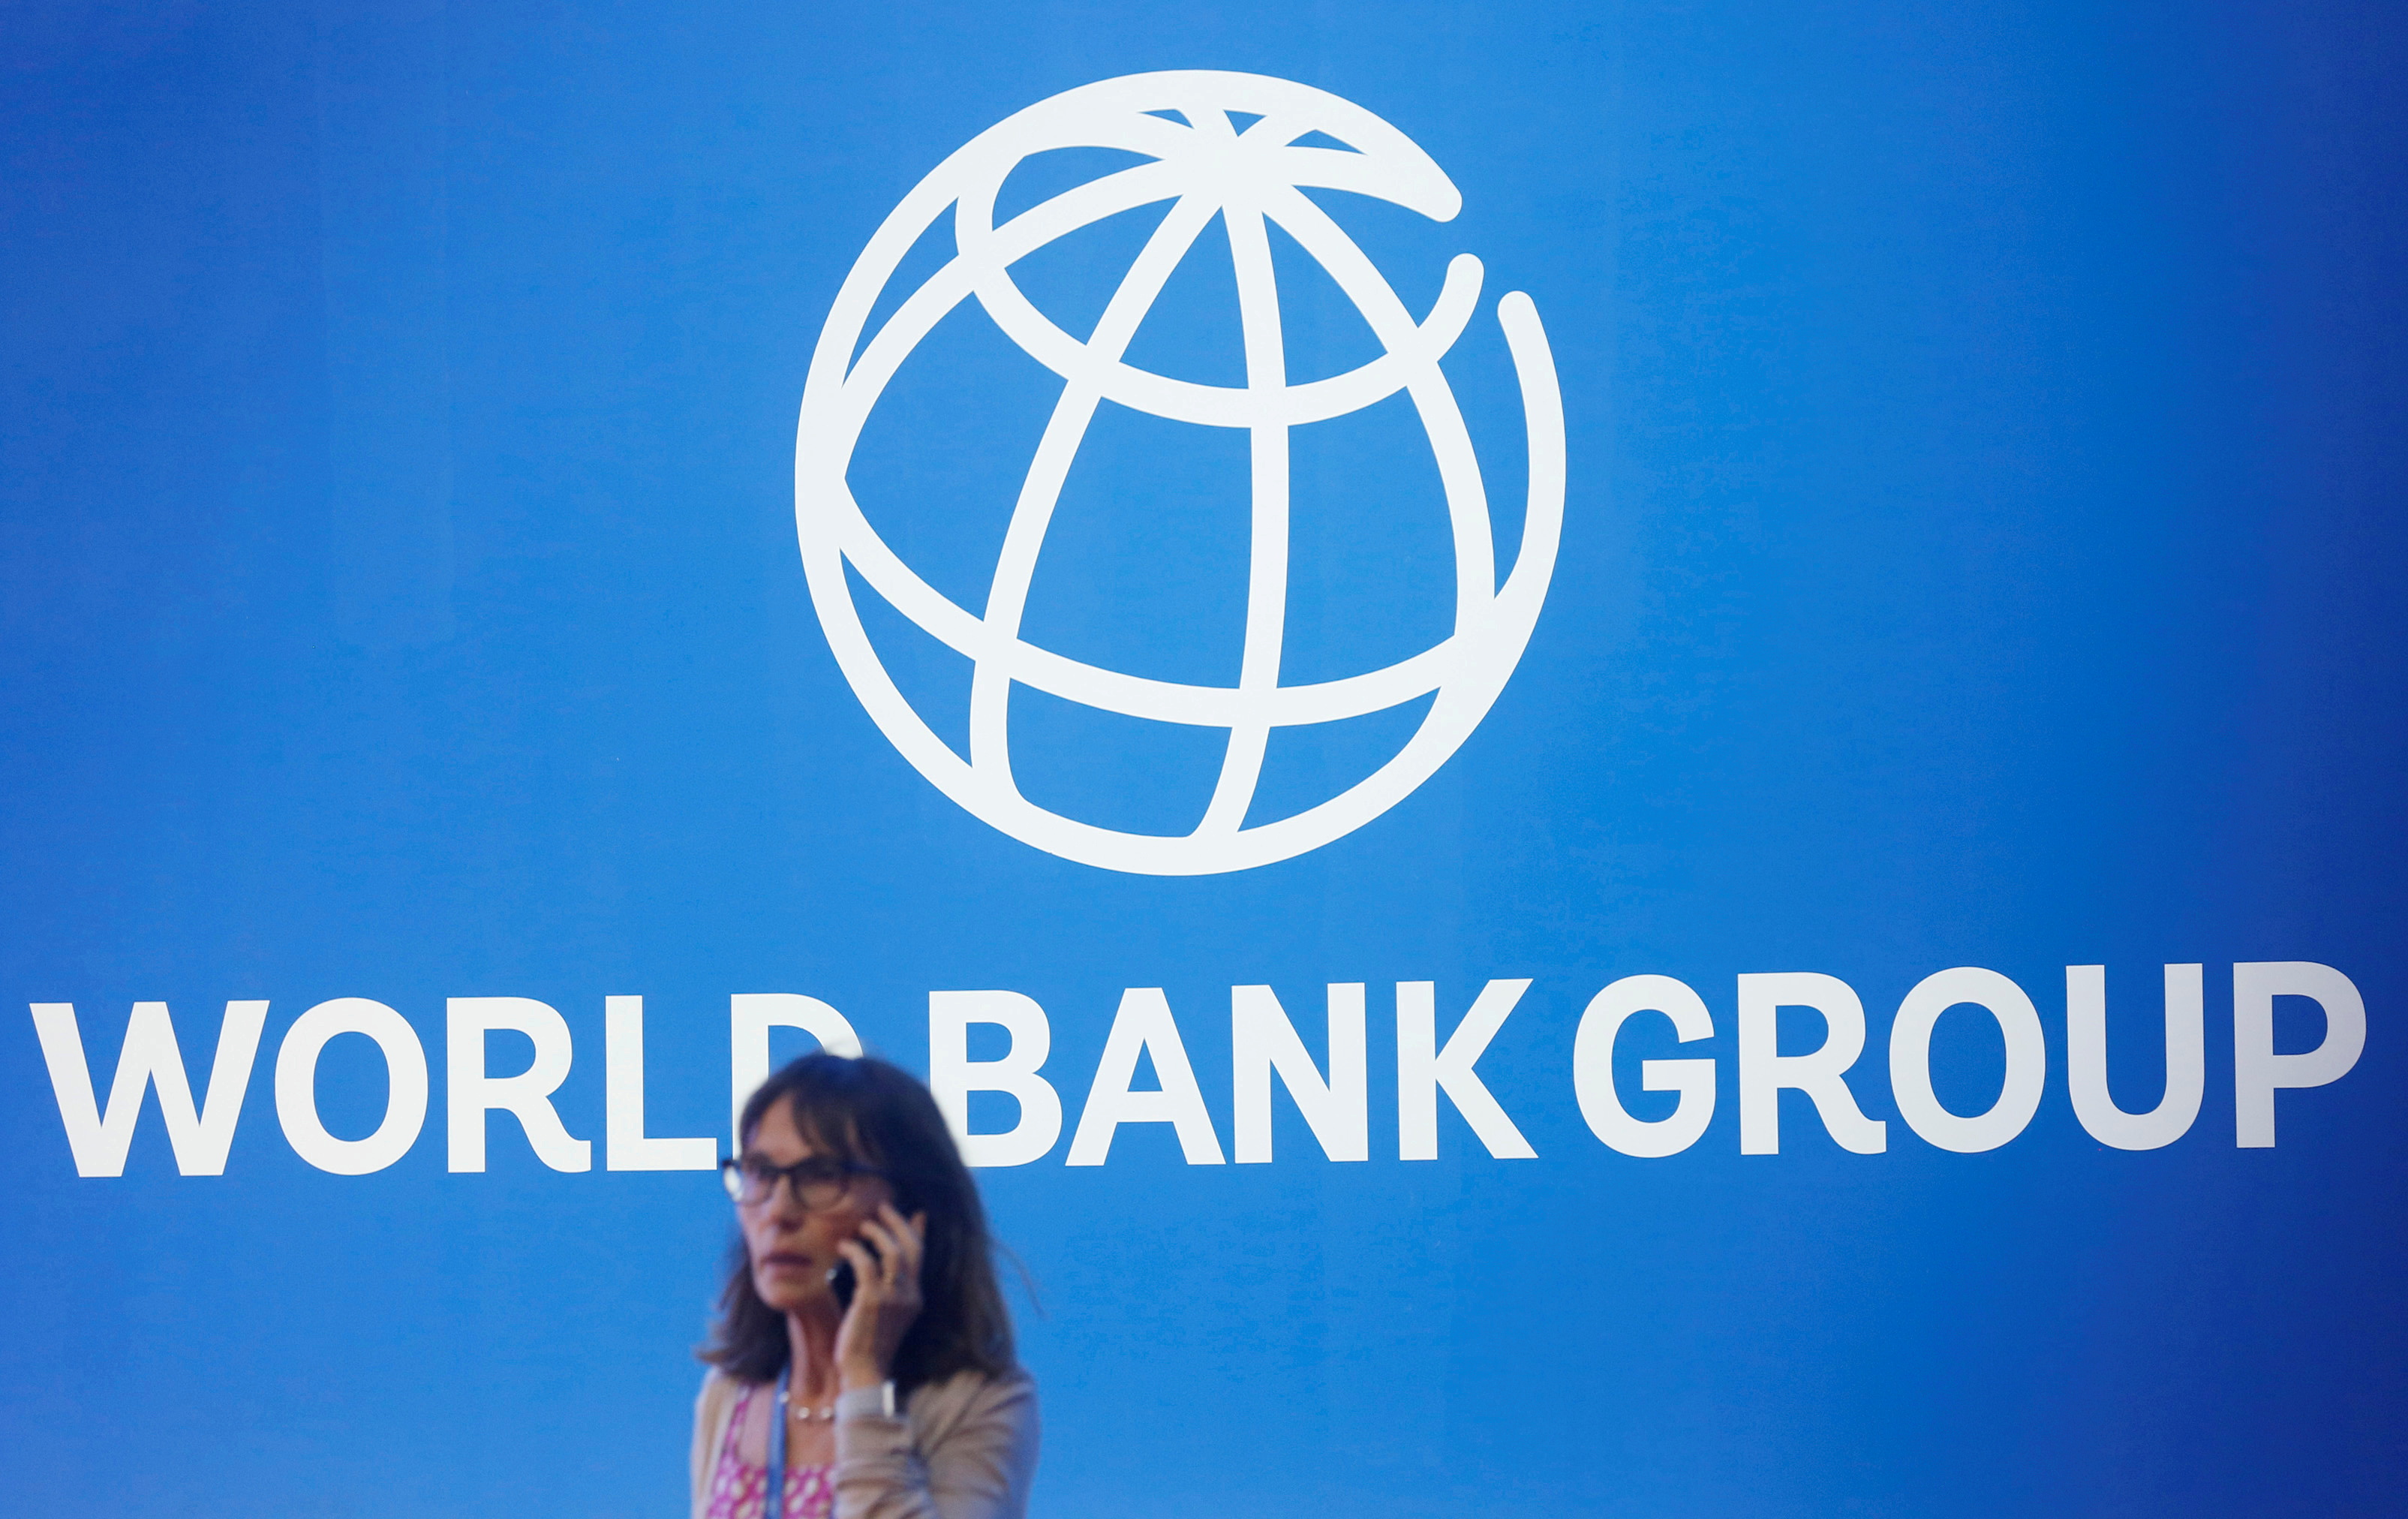 Фонд всемирный банк